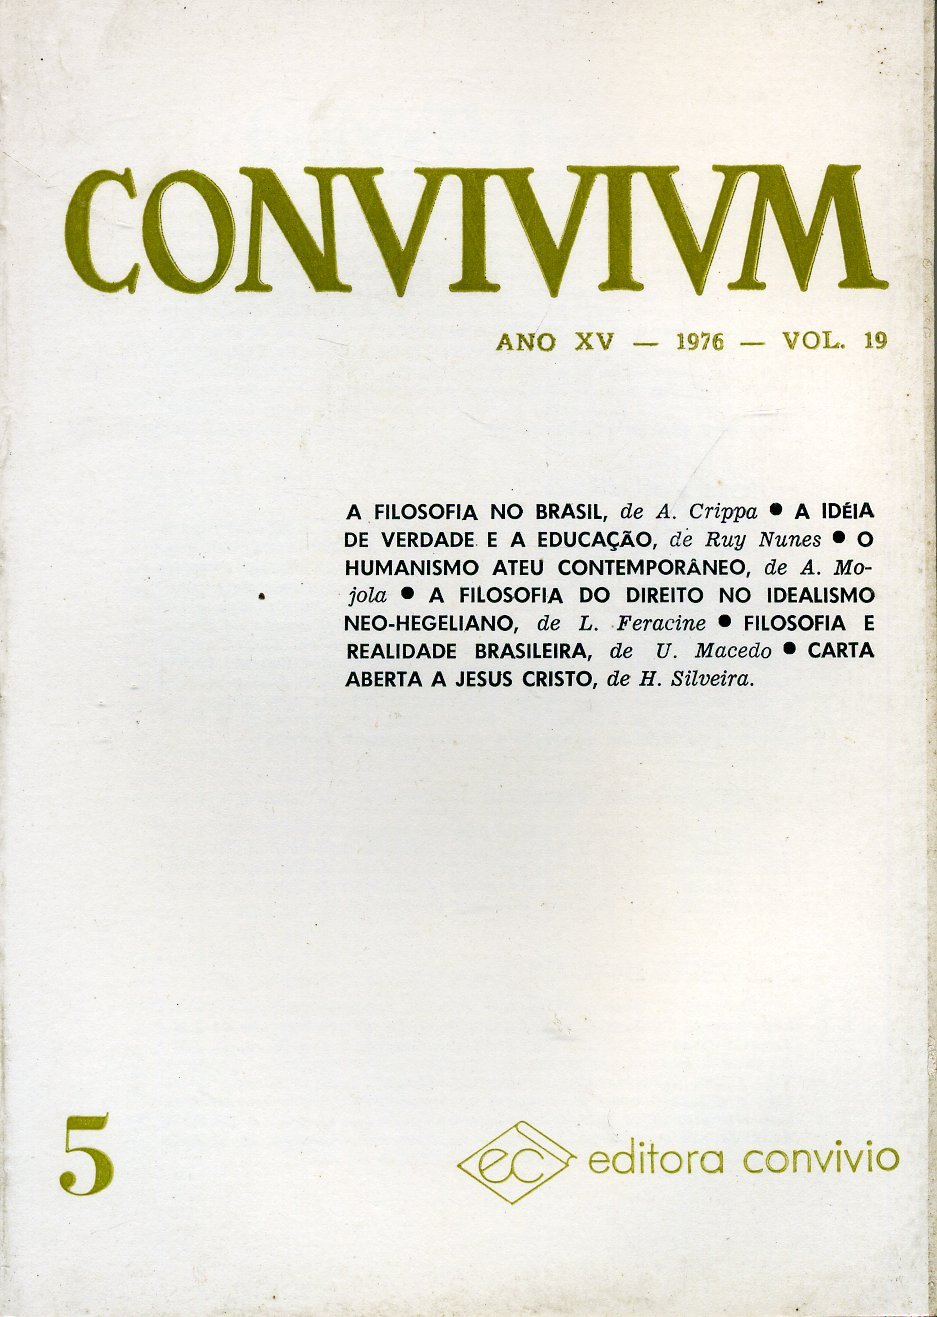 Convivium (Vol. 19)